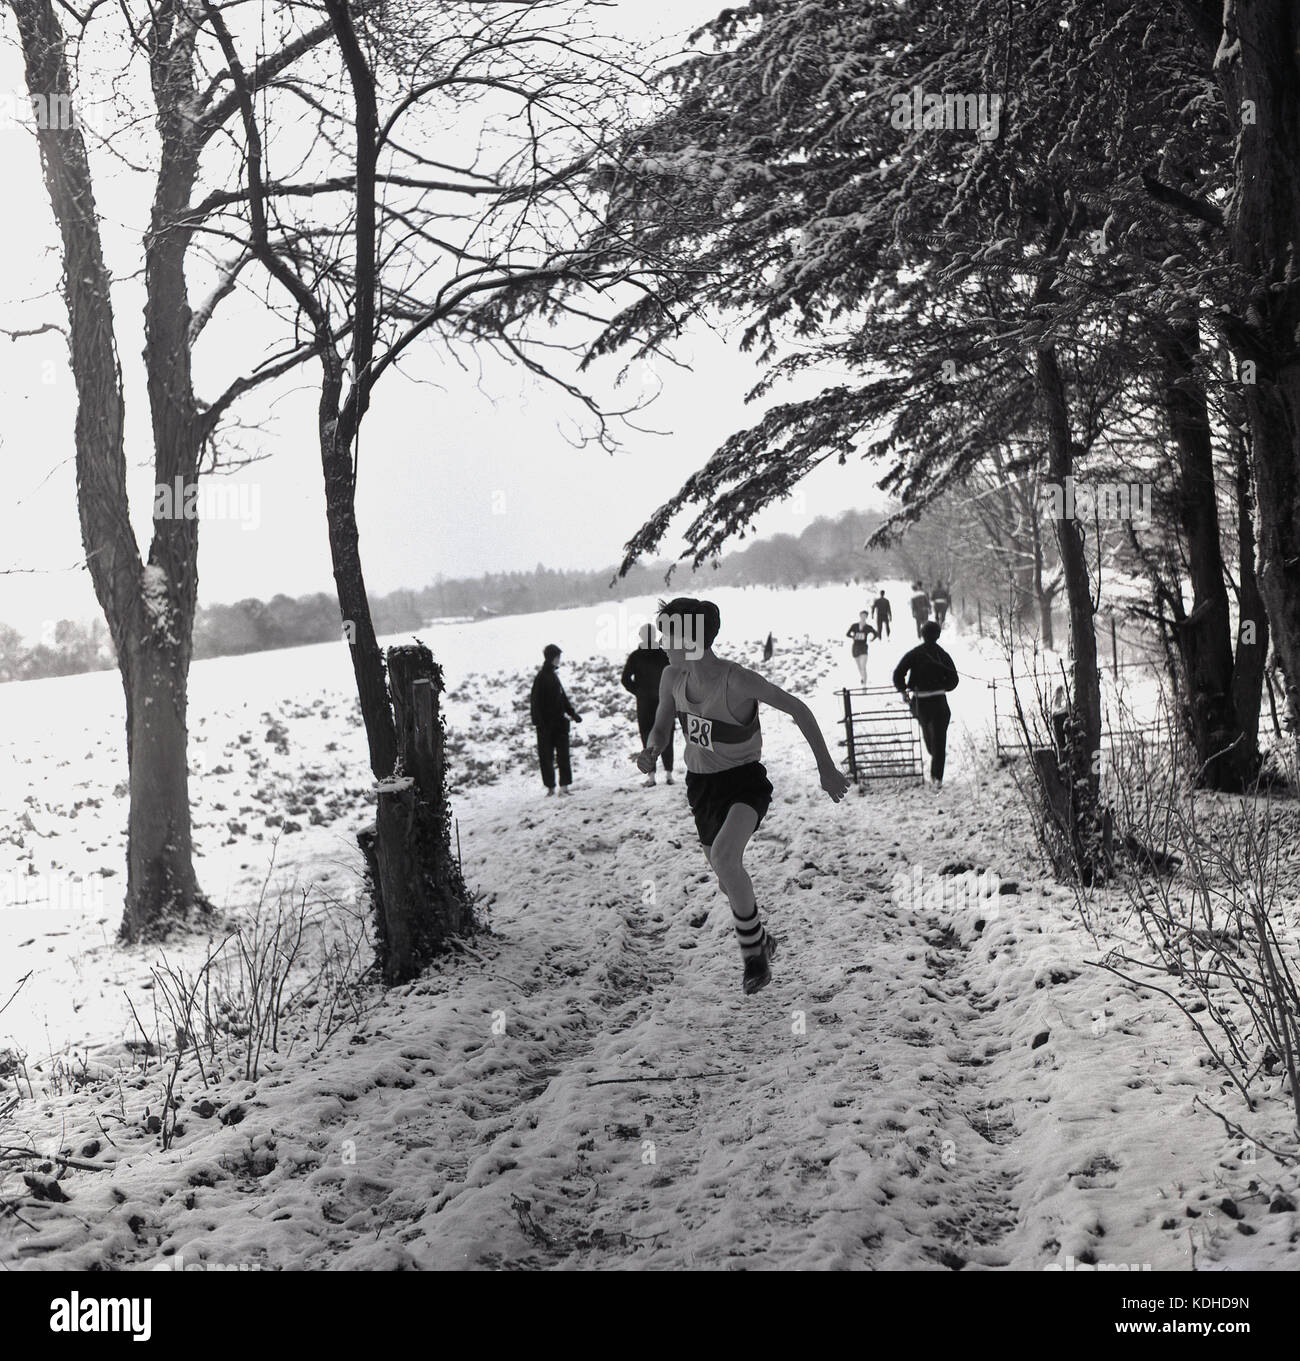 1960, históricos, invierno y competidores masculinos tomando parte en un cross-country corriendo la carrera a través de un campo cubierto de nieve y junto al bosque, Inglaterra. Foto de stock